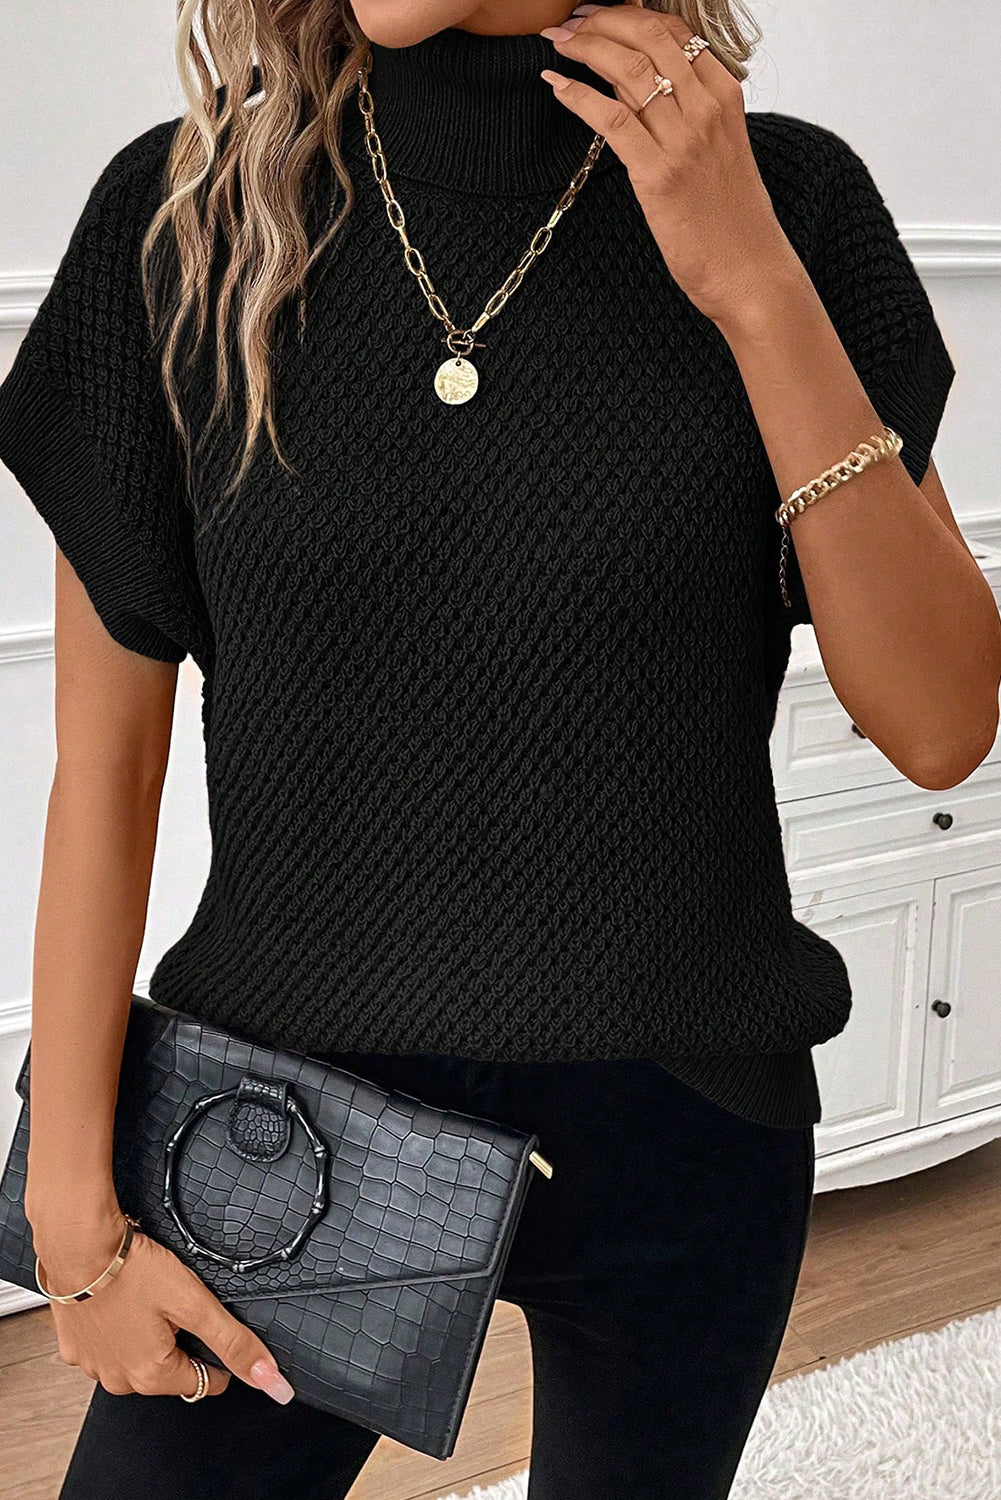 Črn pulover s kratkimi rokavi in ​​teksturo z želvo